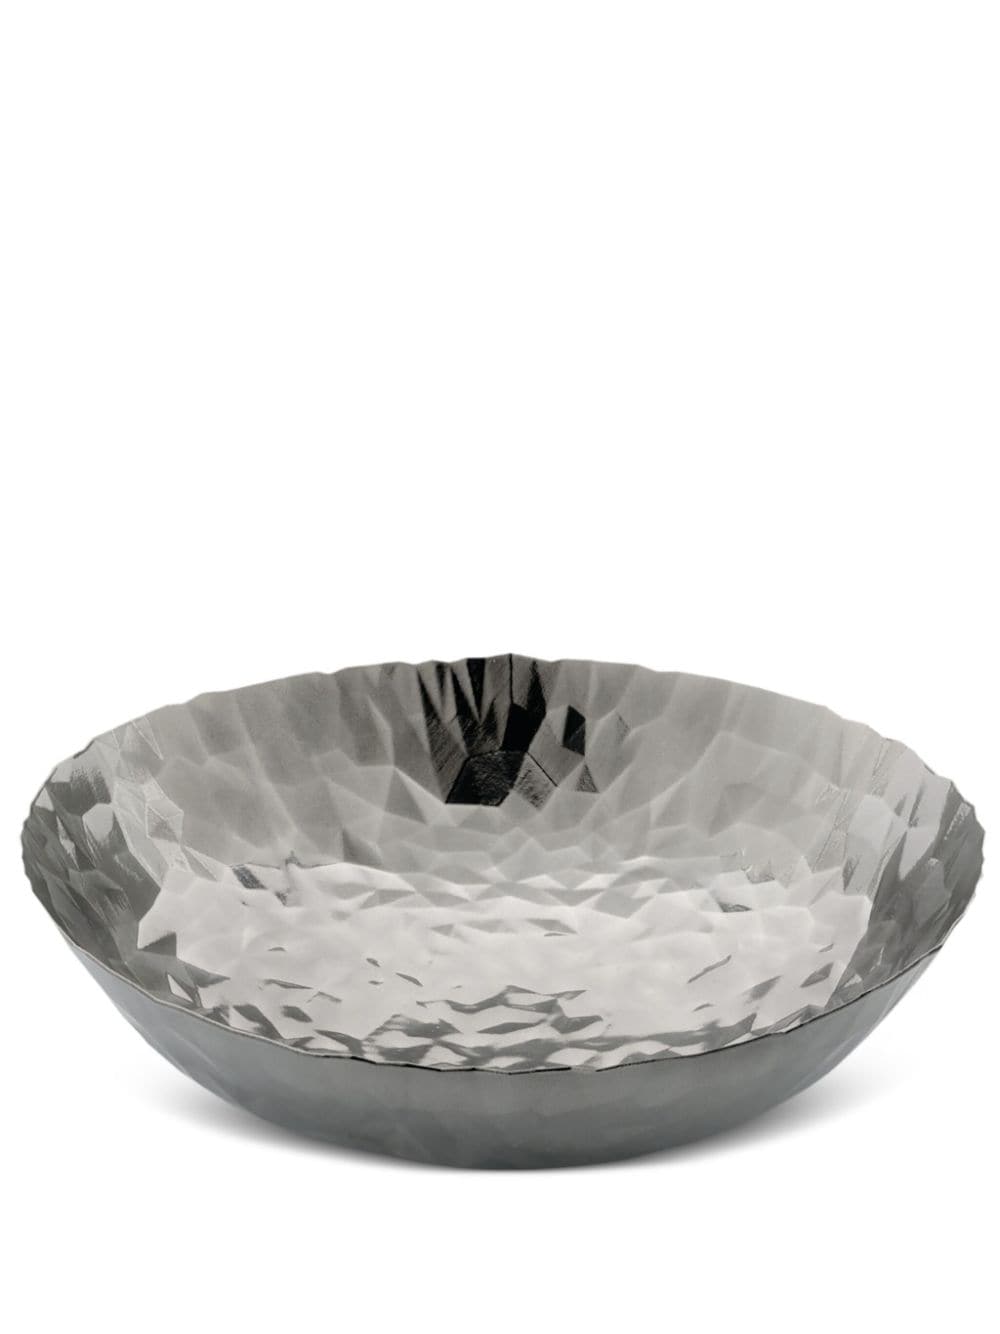 Alessi Joy stainless-steel fruit bowl (37cm) - Silver von Alessi